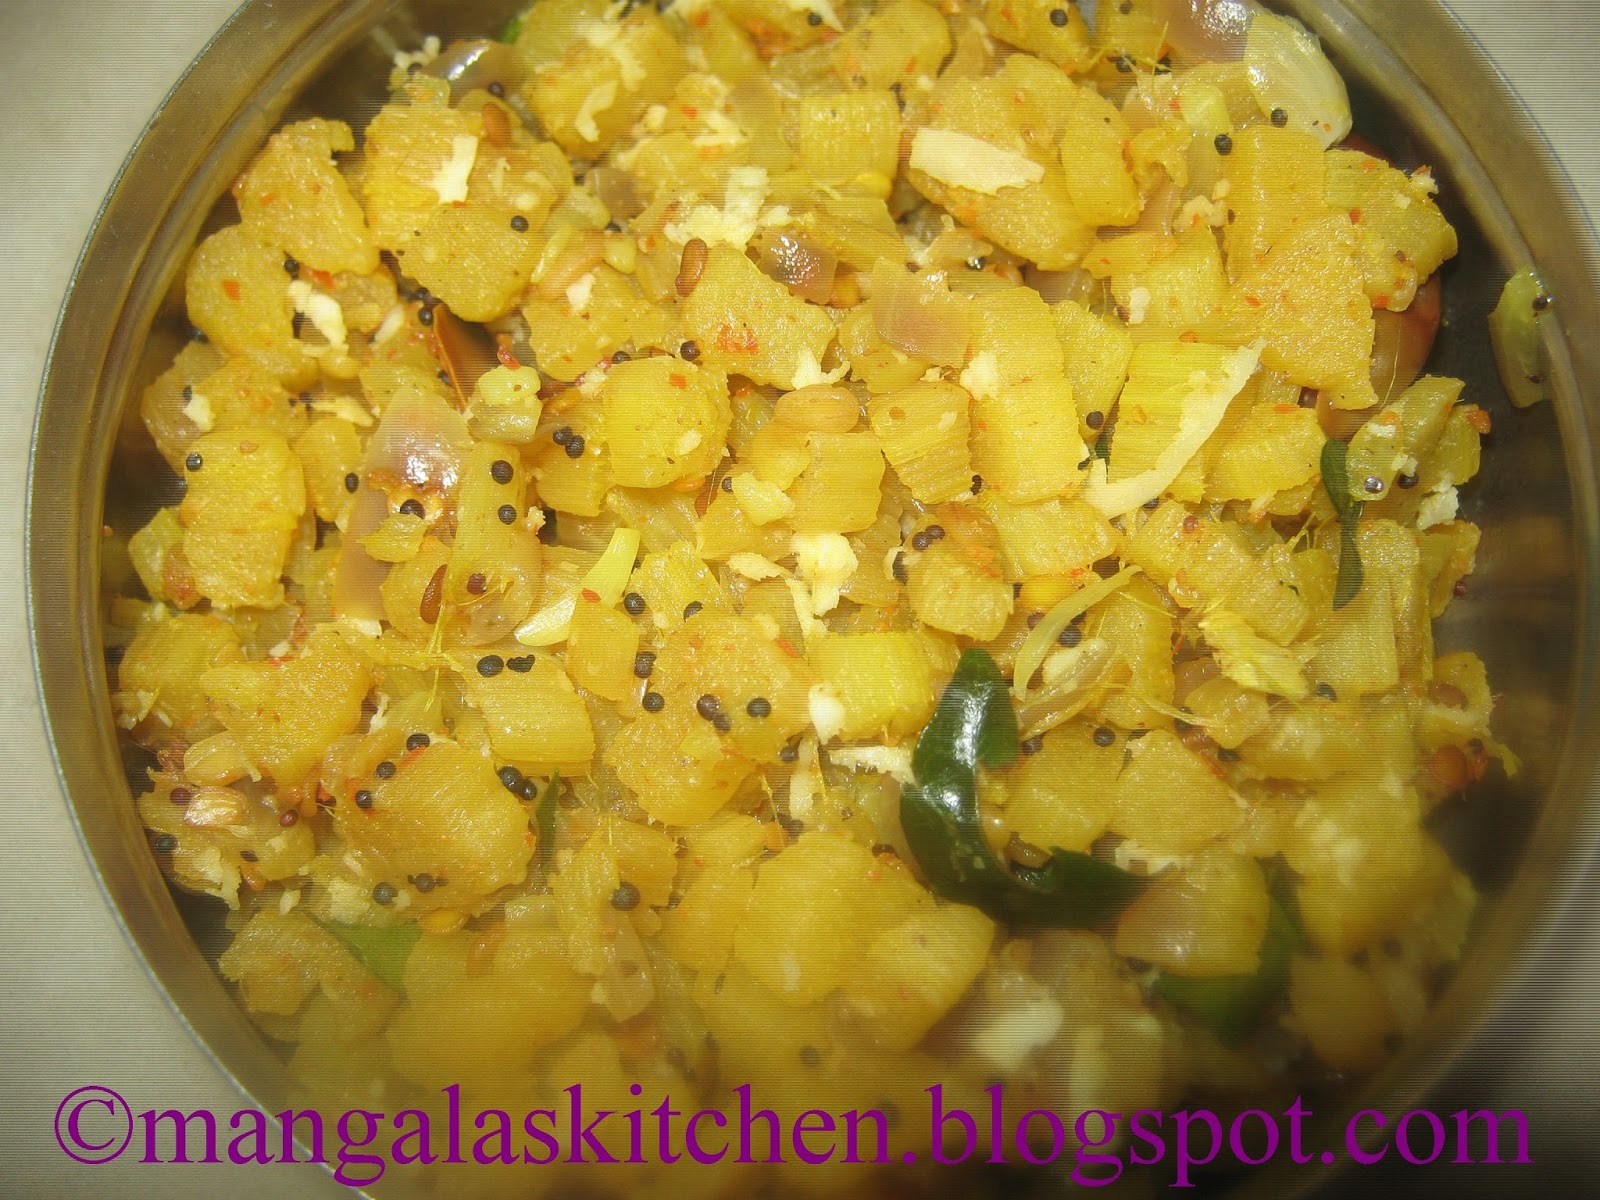 Vazhai Thandu Poriyal - Banana Stem / Plantain Stem Stir fry Recipe ...